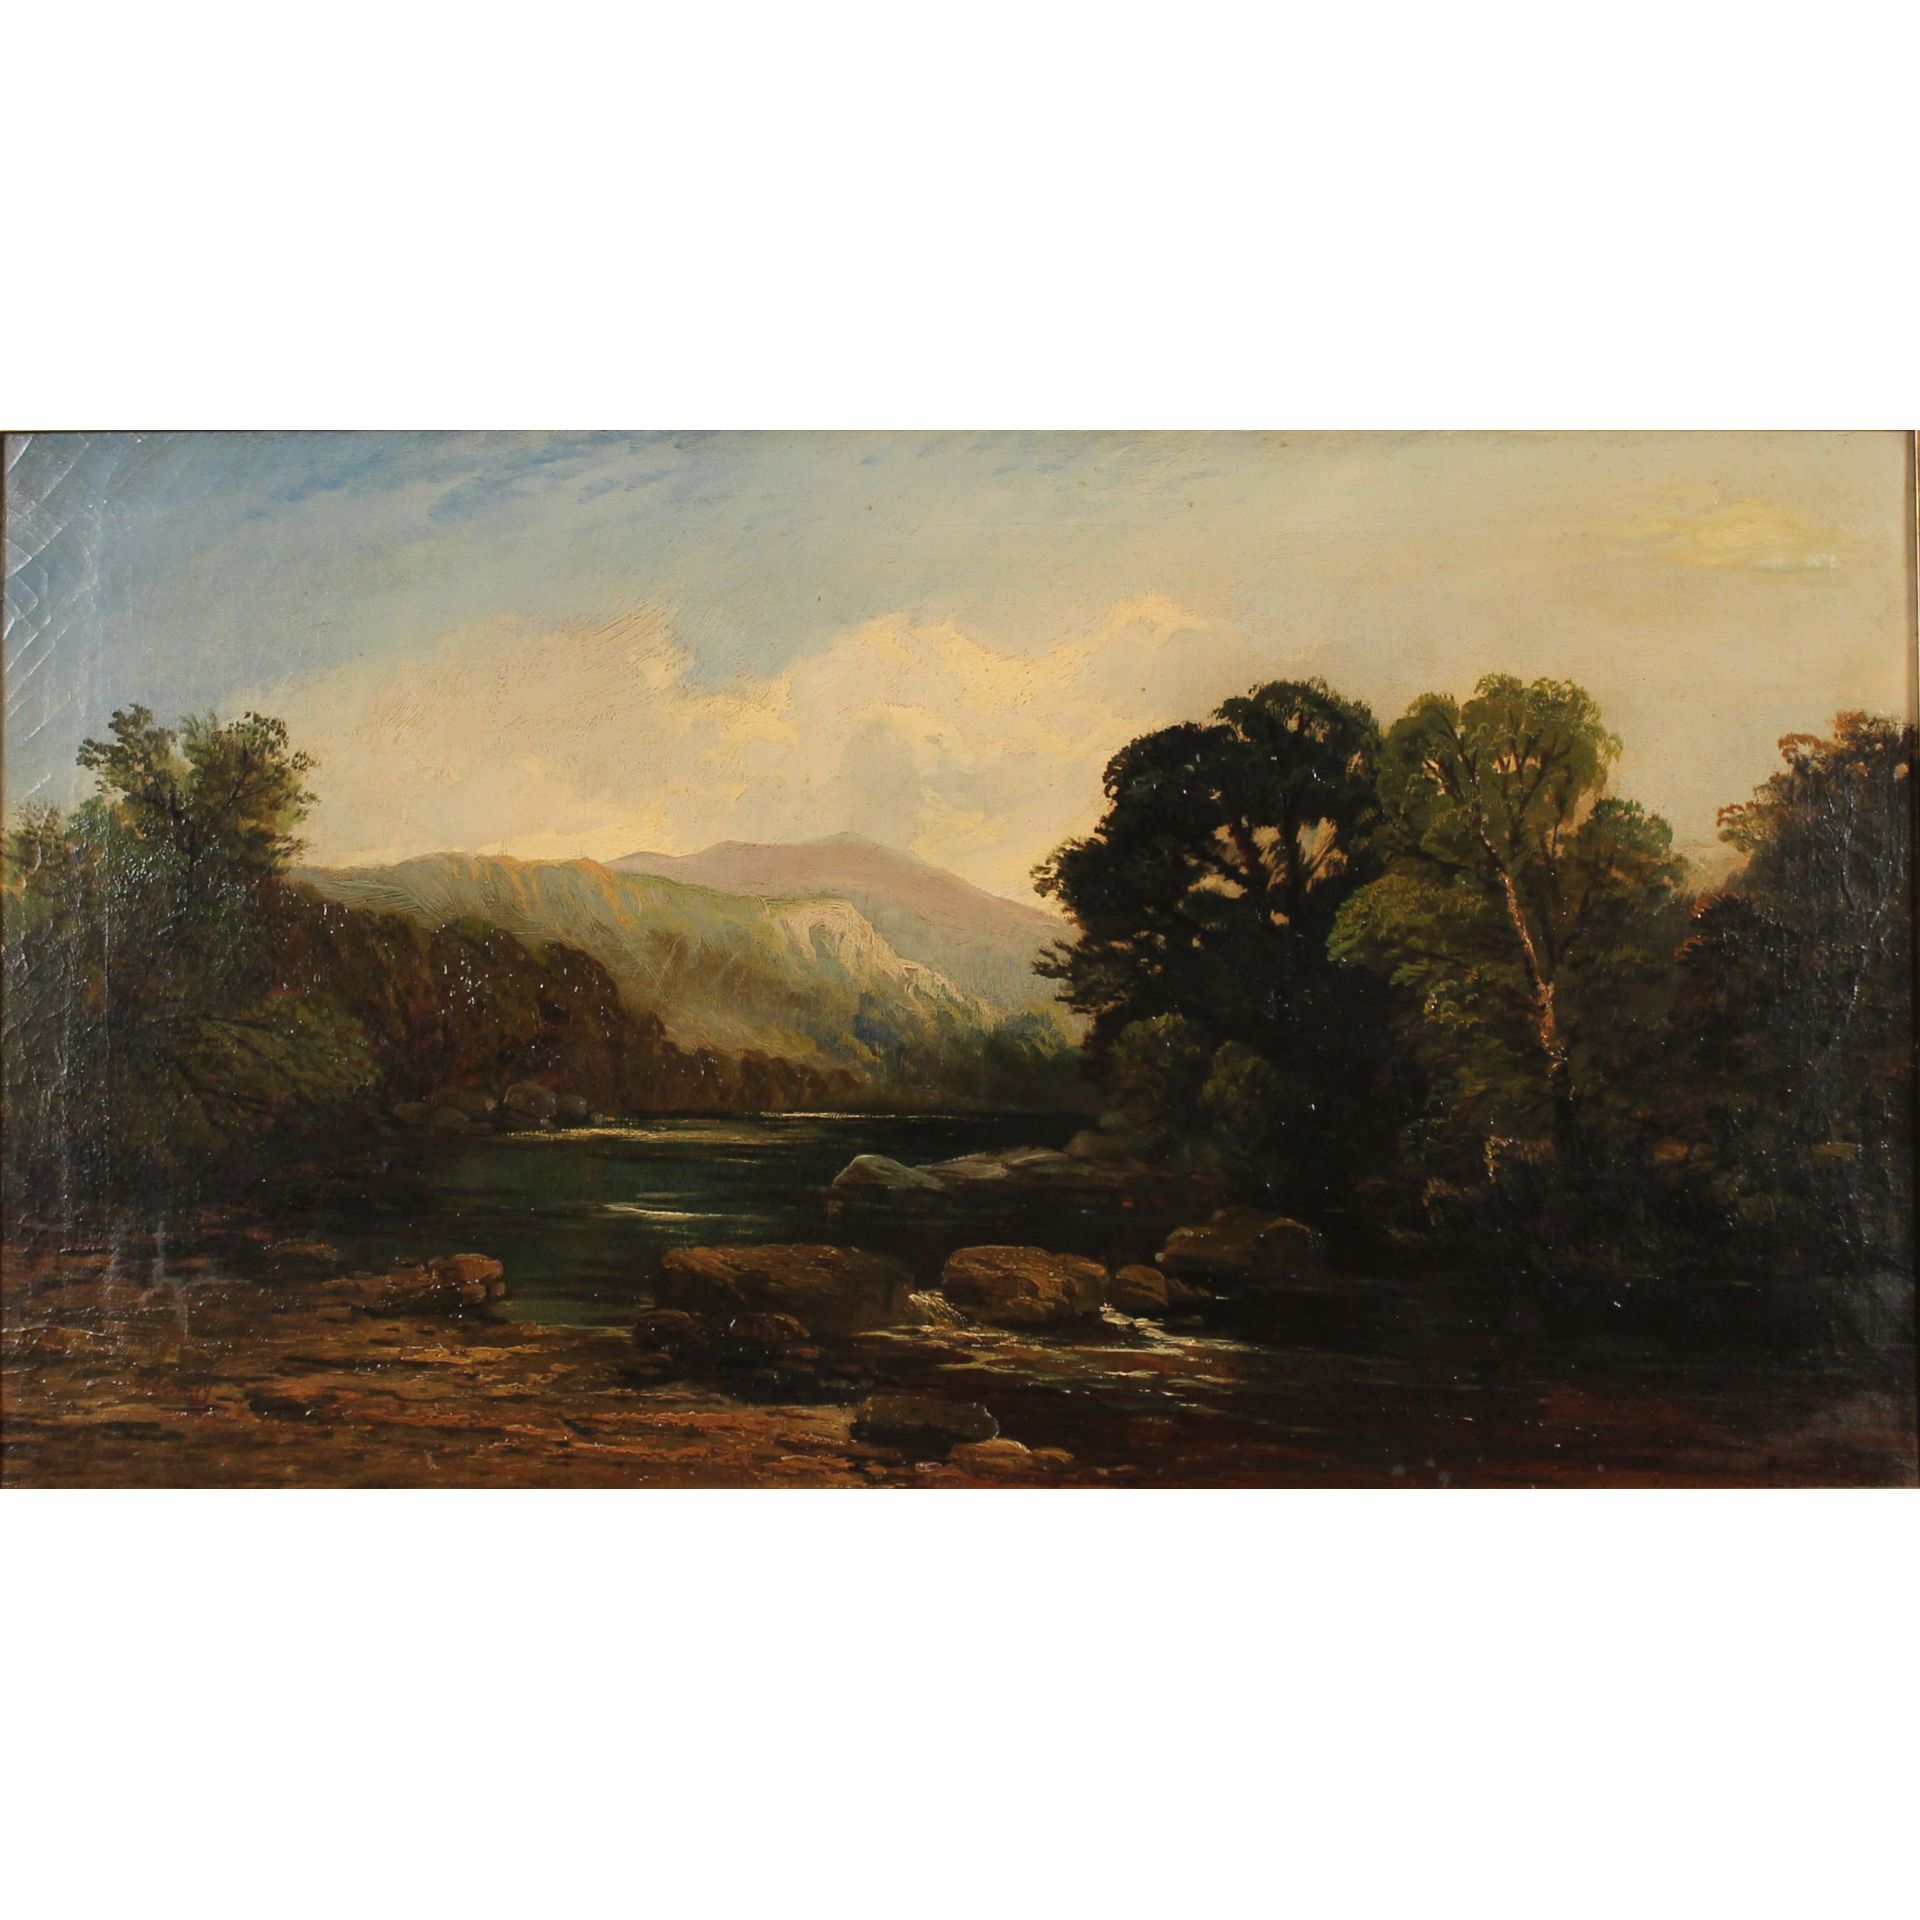 William Bromley III (1835/1888) "Paesaggio con ruscello" - "Landscape with stream"